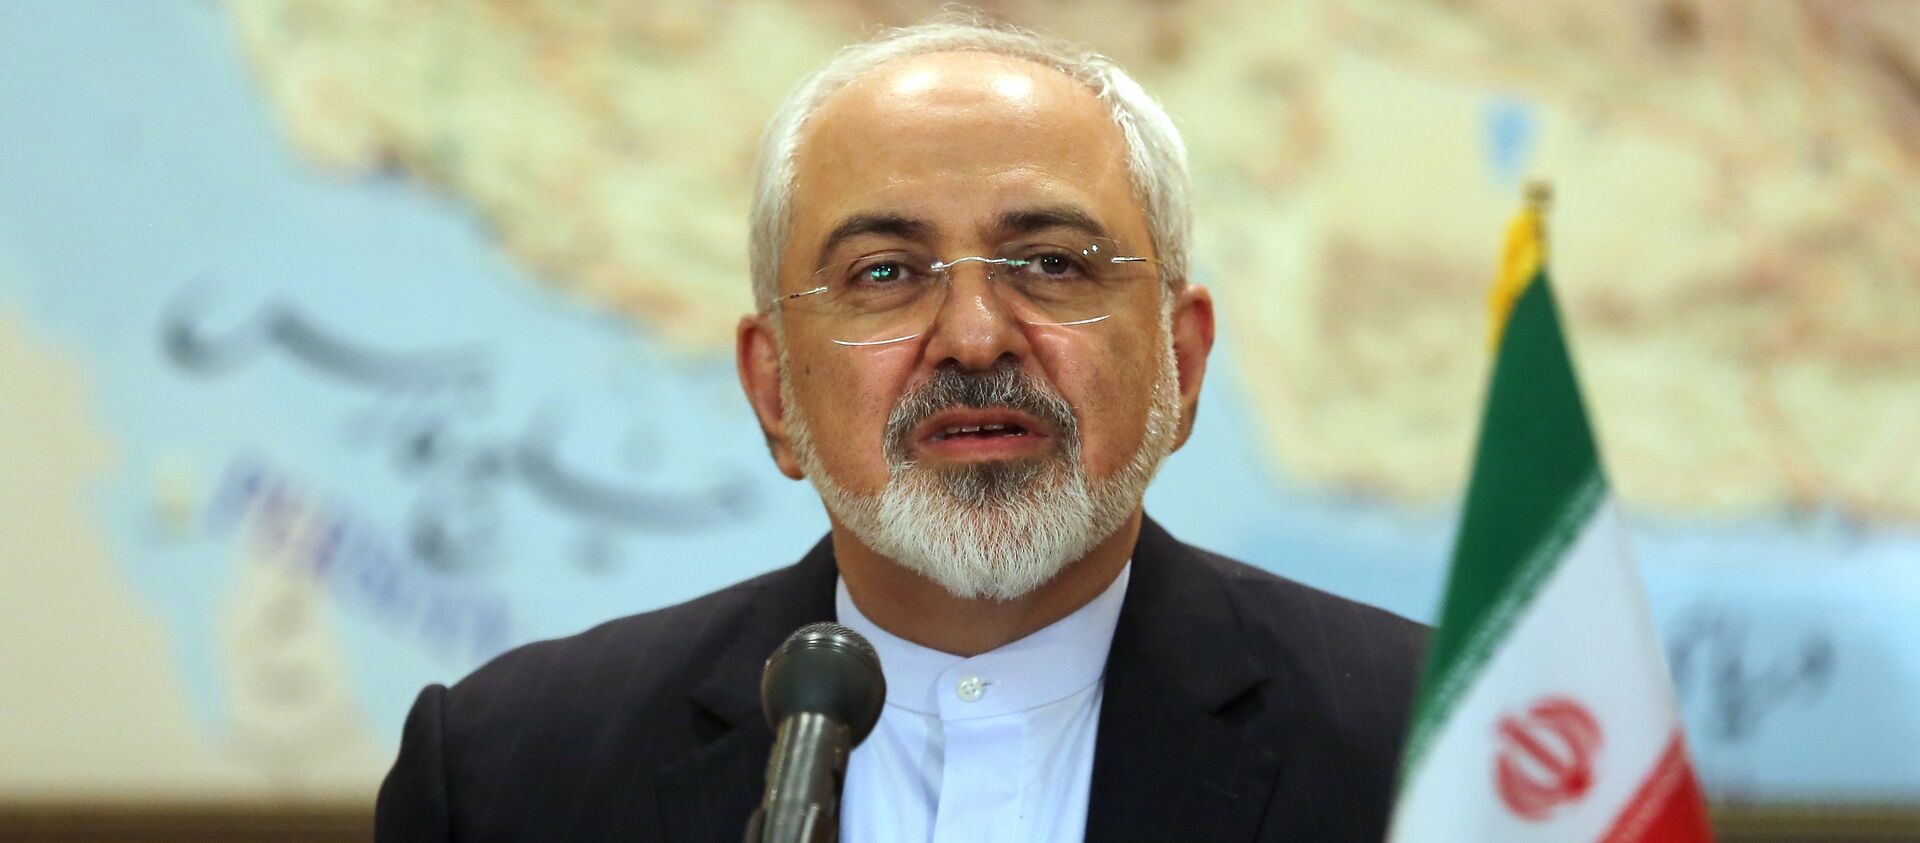 وزیر خارجه ایران رأی خود را به صندوق انداخت - اسپوتنیک ایران  , 1920, 18.06.2021